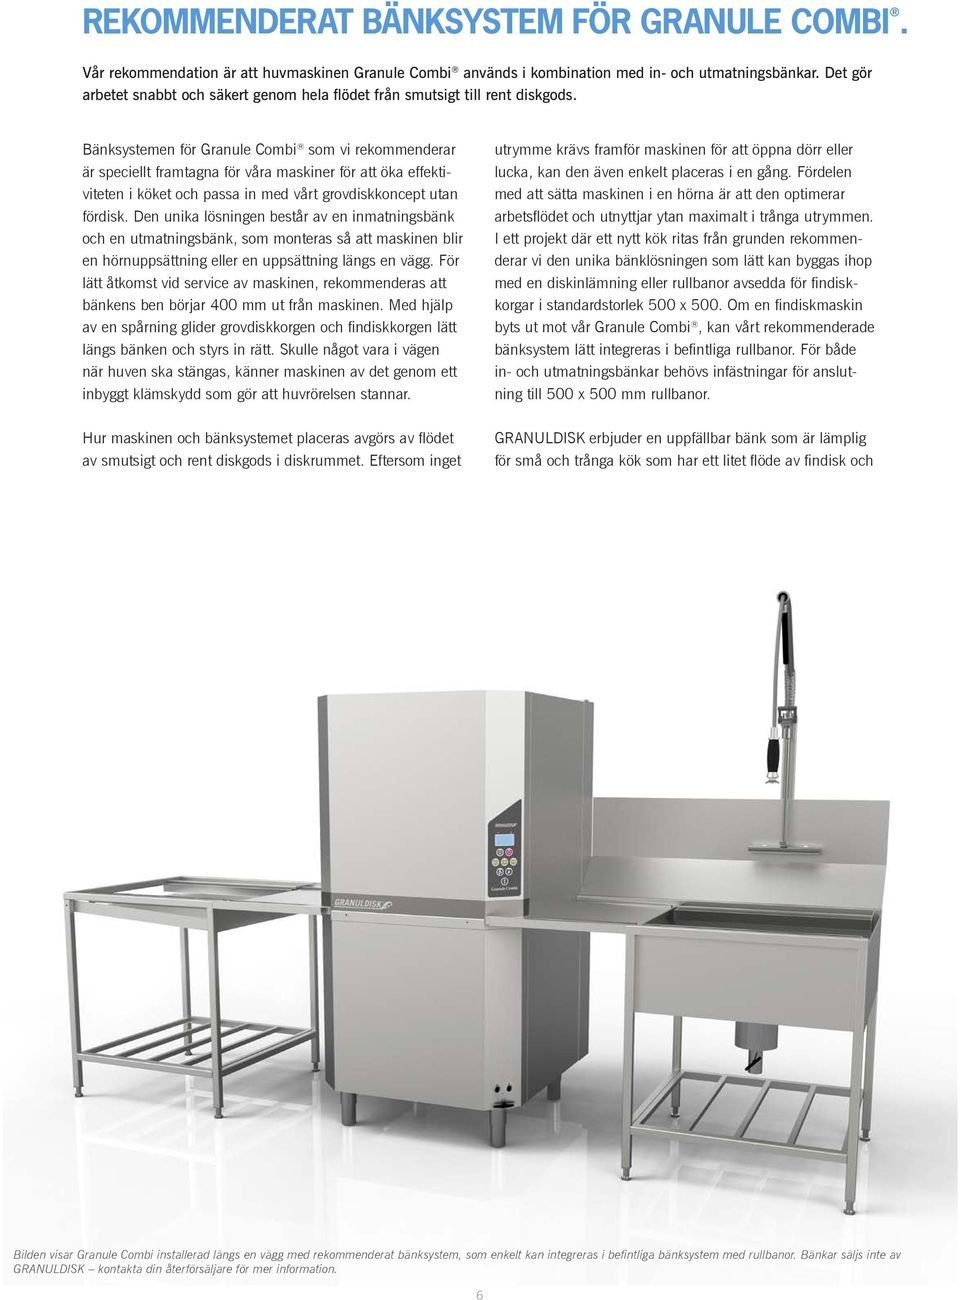 Bänksystemen för Granule Combi som vi rekommenderar är speciellt framtagna för våra maskiner för att öka effektiviteten i köket och passa in med vårt grovdiskkoncept utan fördisk.